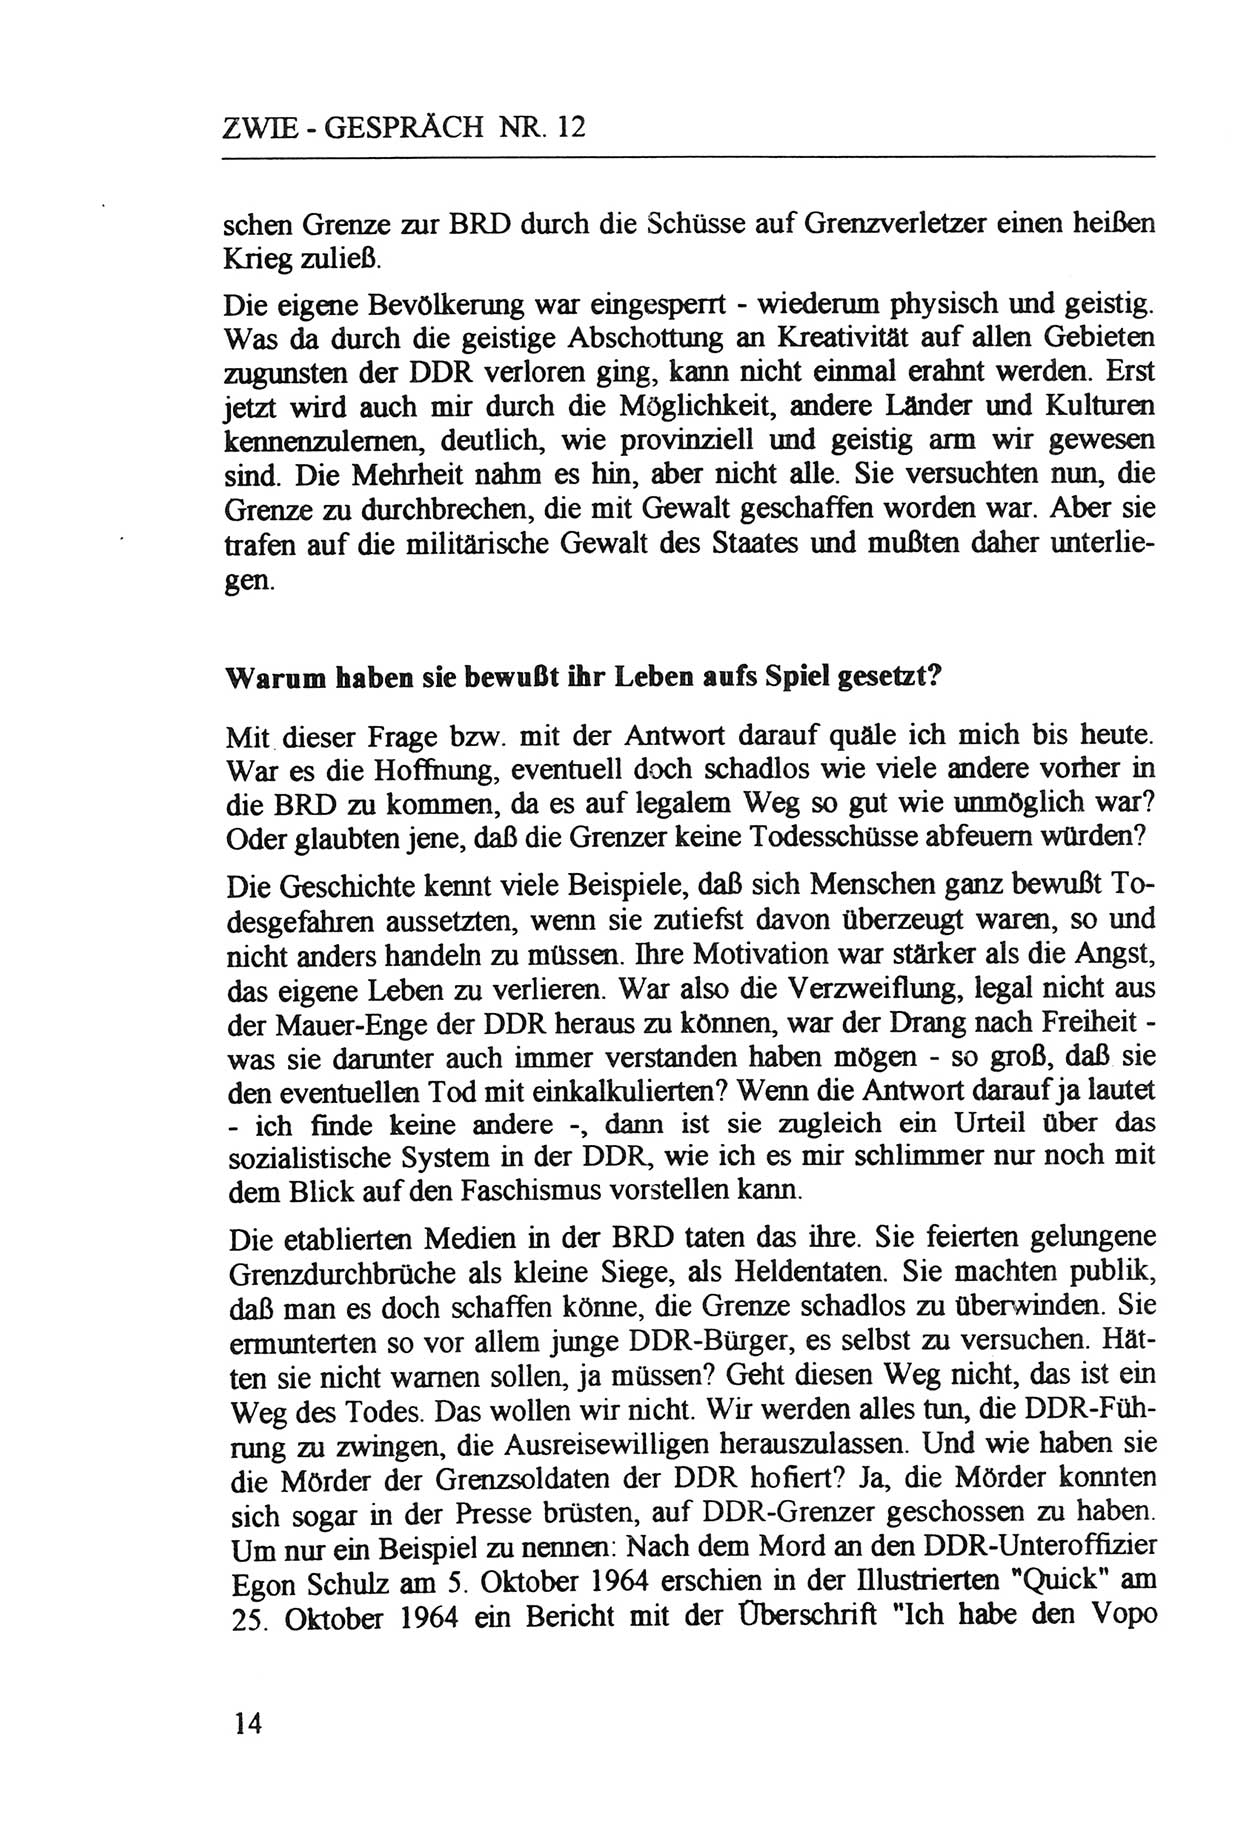 Zwie-Gespräch, Beiträge zur Aufarbeitung der Staatssicherheits-Vergangenheit [Deutsche Demokratische Republik (DDR)], Ausgabe Nr. 12, Berlin 1993, Seite 14 (Zwie-Gespr. Ausg. 12 1993, S. 14)